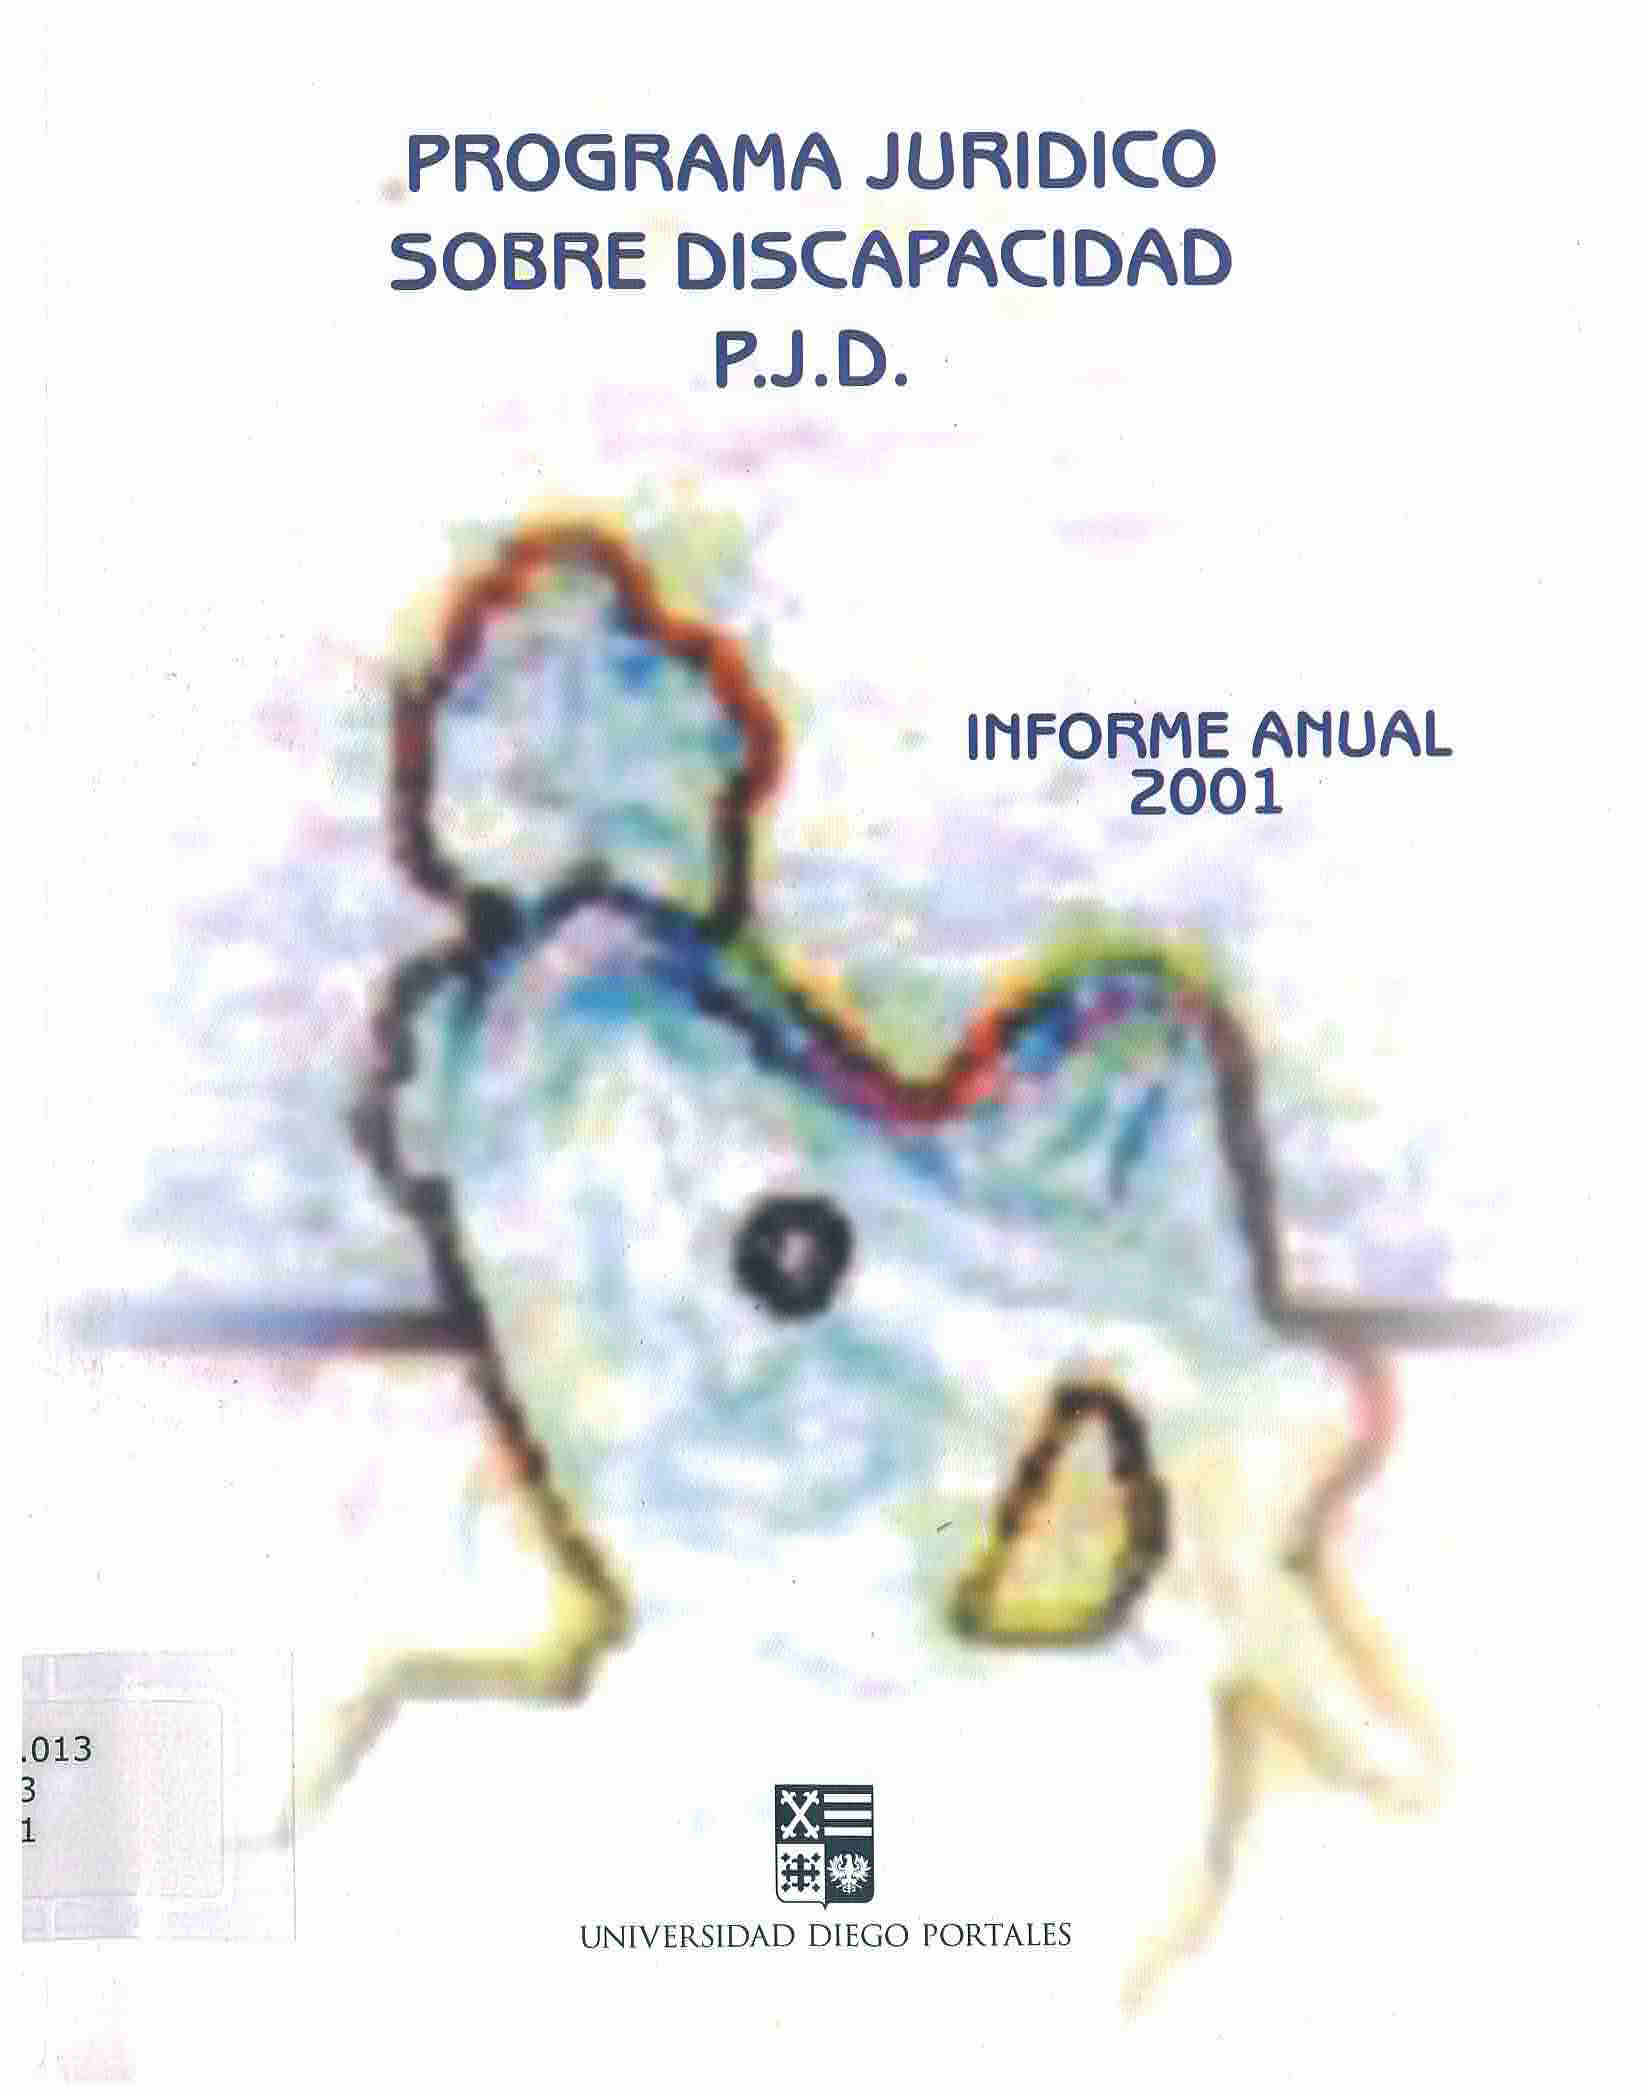 Programa jurídico sobre discapacidad P.J.D : informe anual 2001